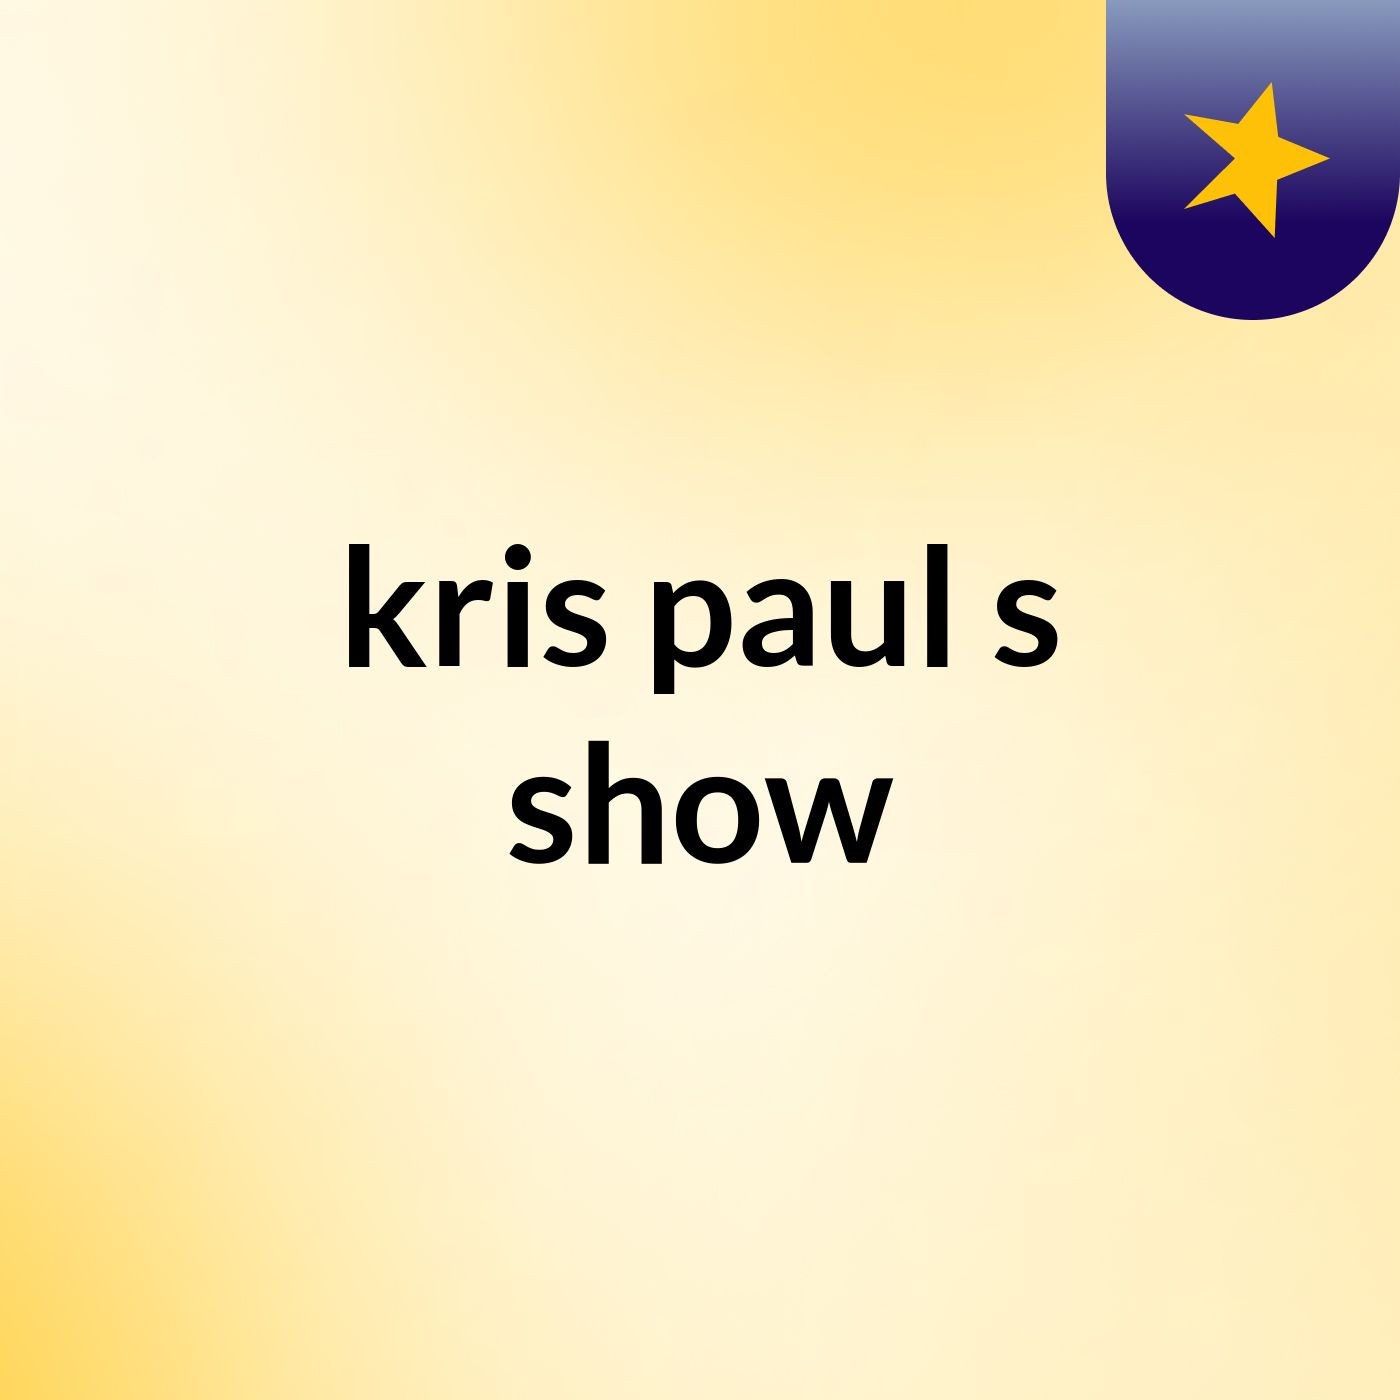 kris paul's show